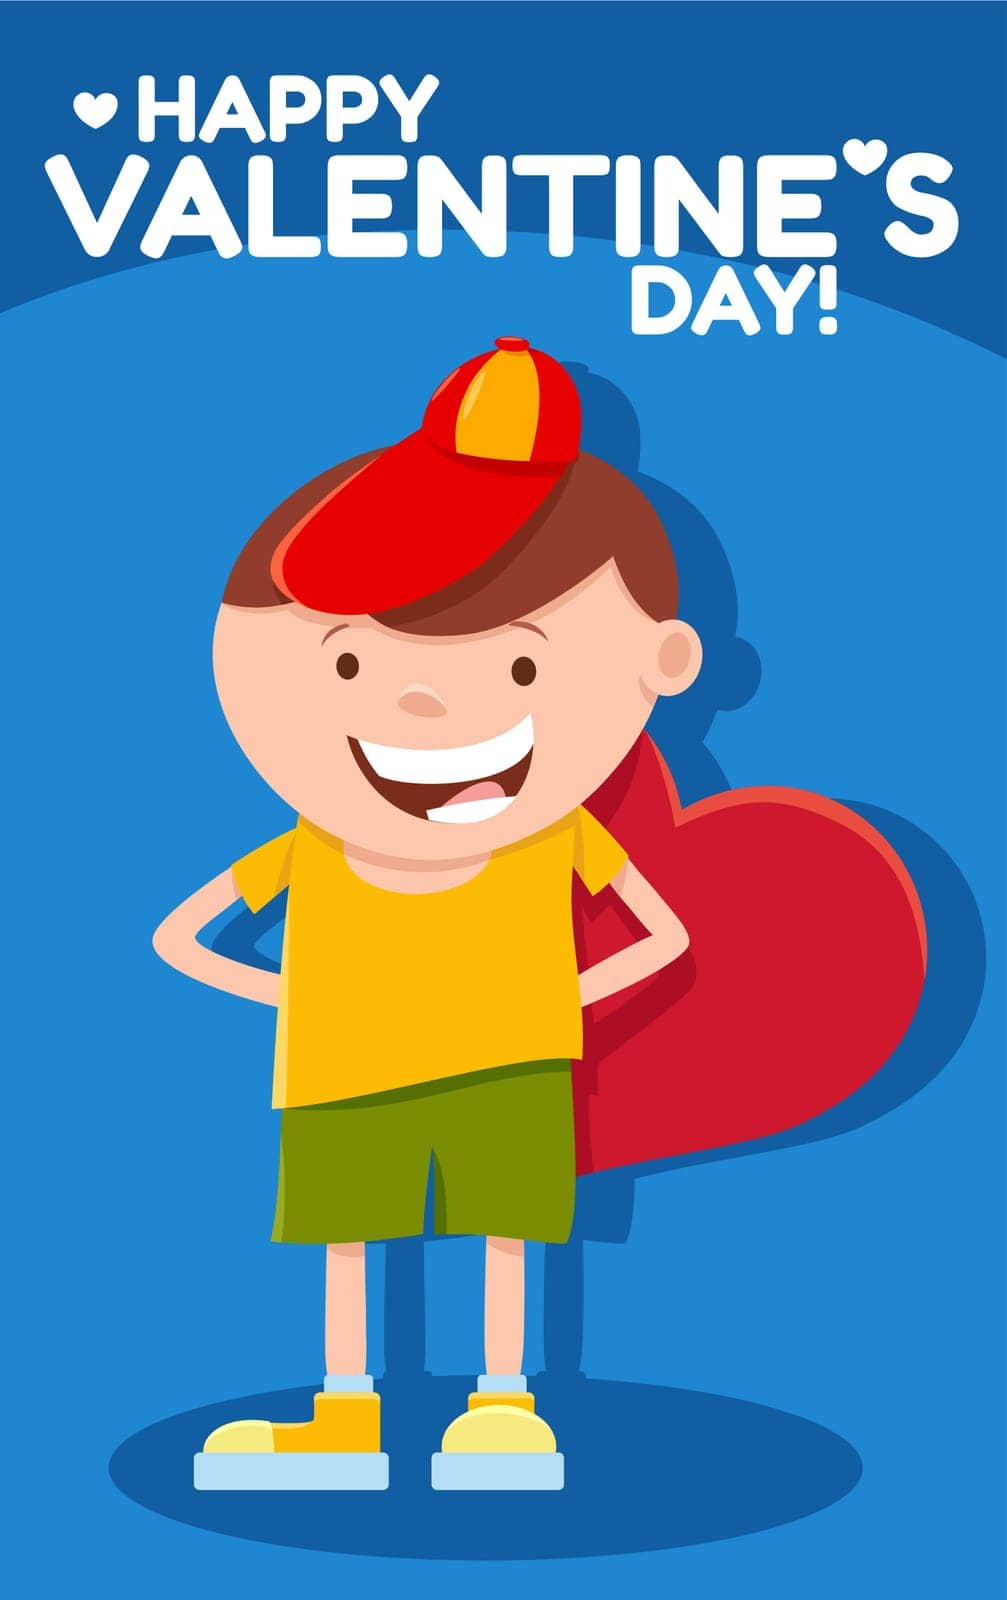 funny cartoon boy with heart Valentines Day card by izakowski